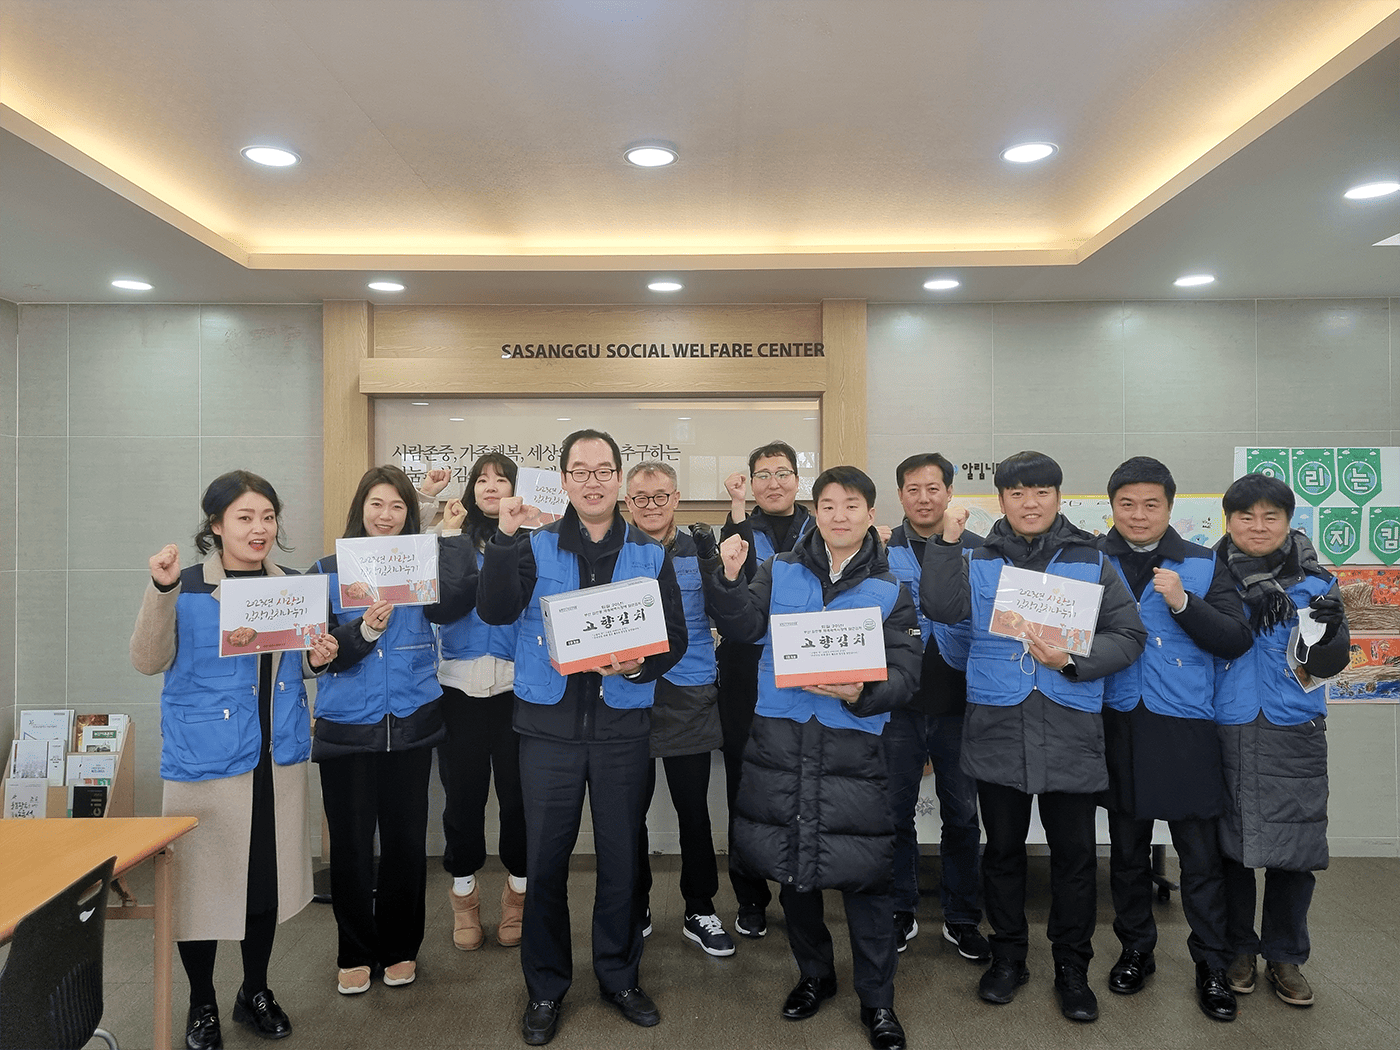 지털대학교 교직원봉사단 사상구 내 김장김치 전달 봉사  참여